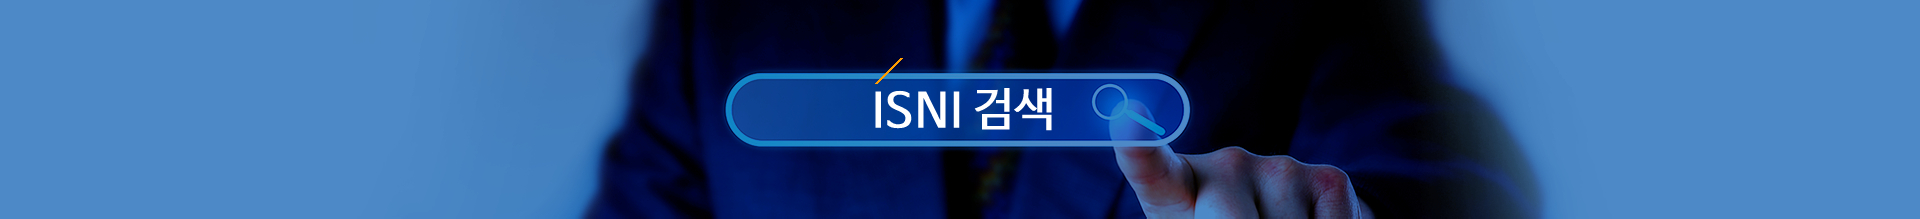 ISNI公司